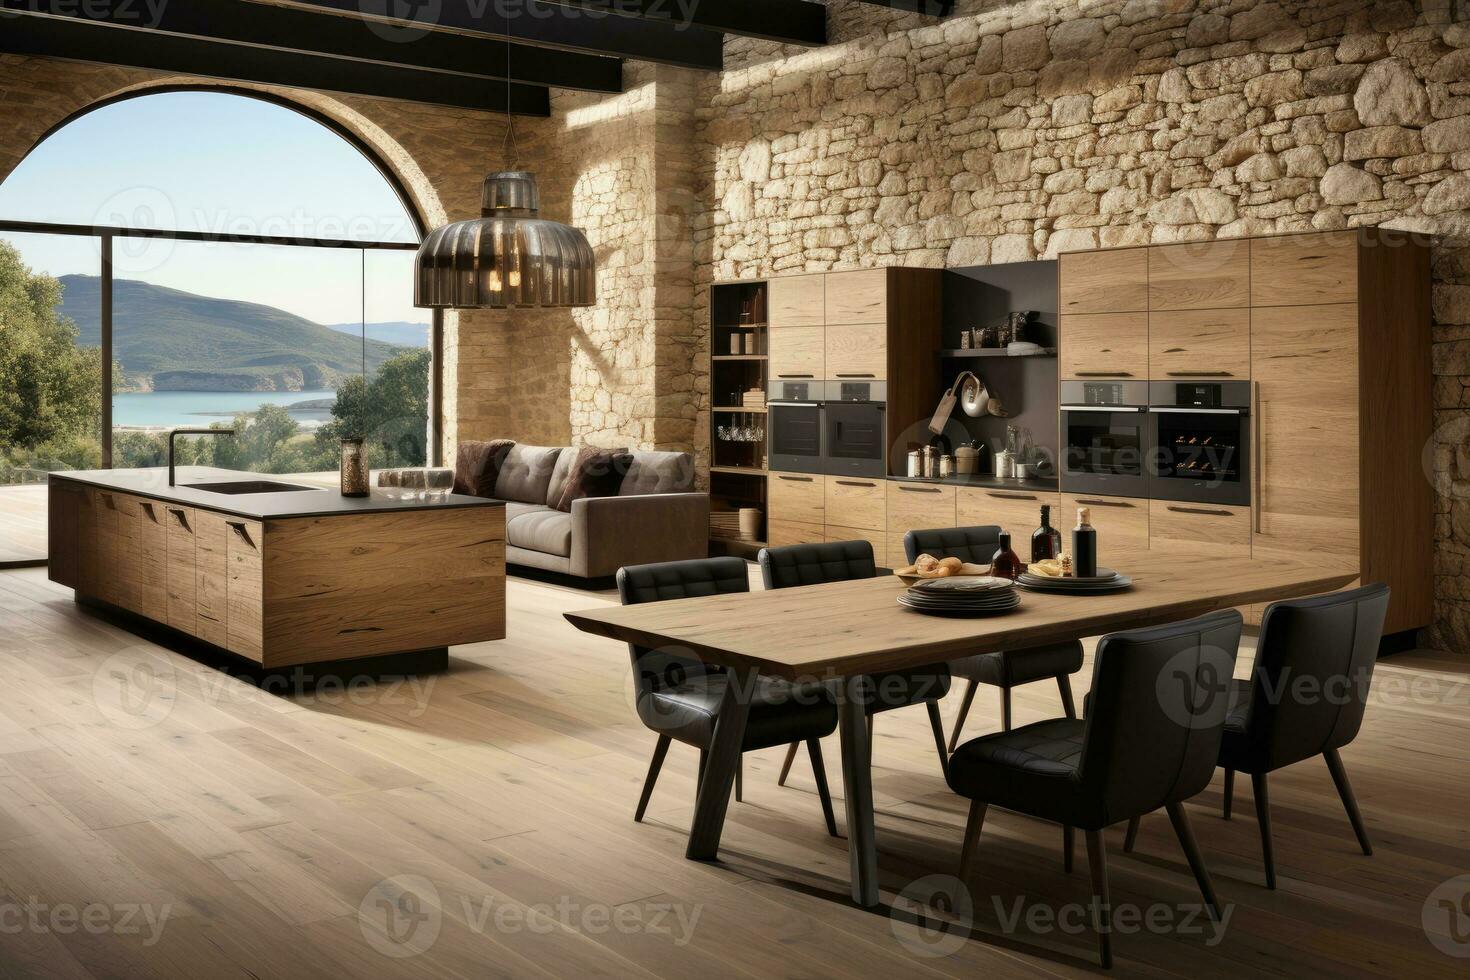 ai gerado moderno estilo natural madeira cozinha profissional publicidade fotografia foto